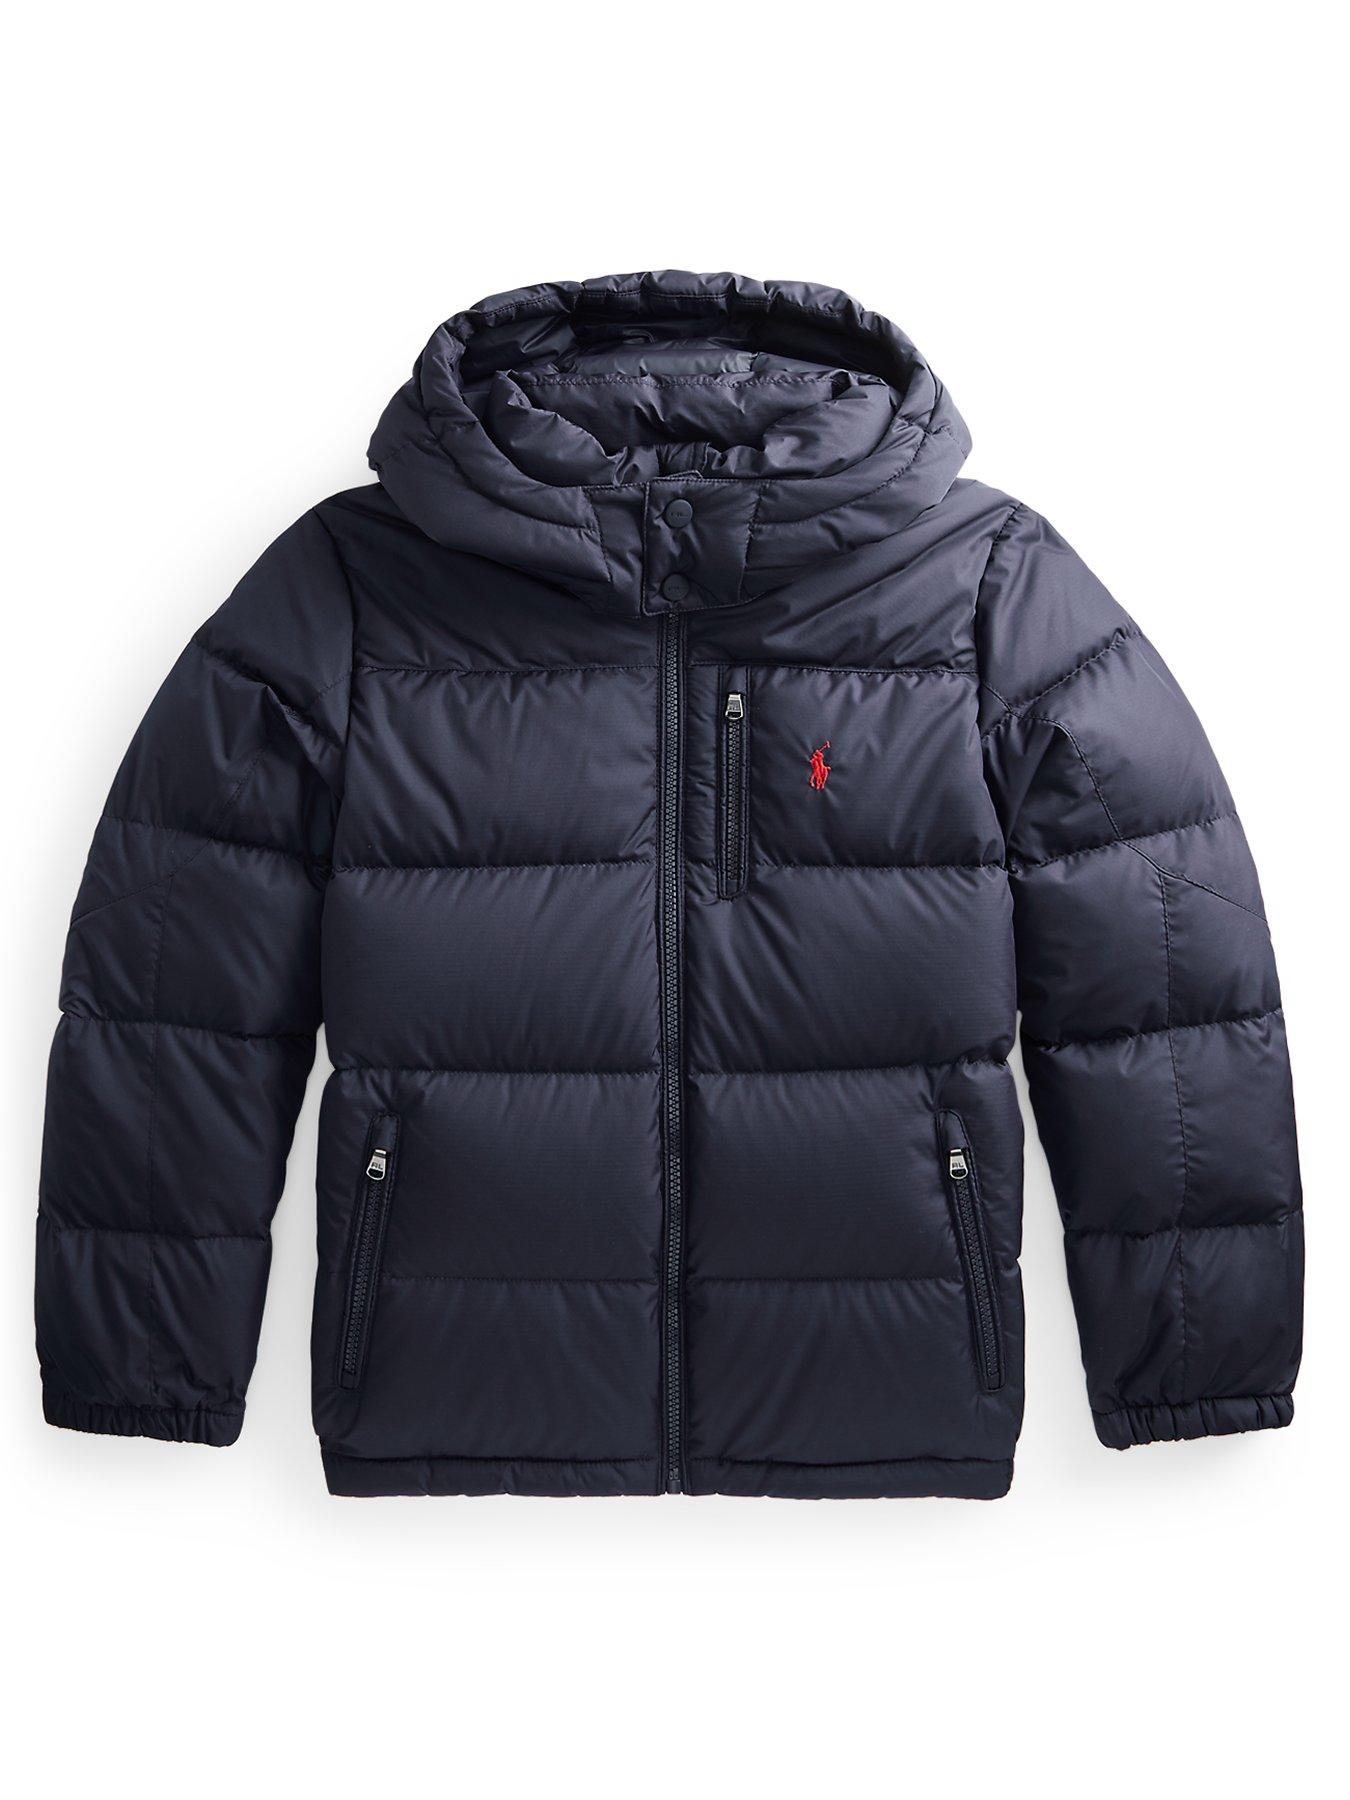 Ralph Lauren vest discount 73% Navy Blue 10Y KIDS FASHION Jackets Elegant 